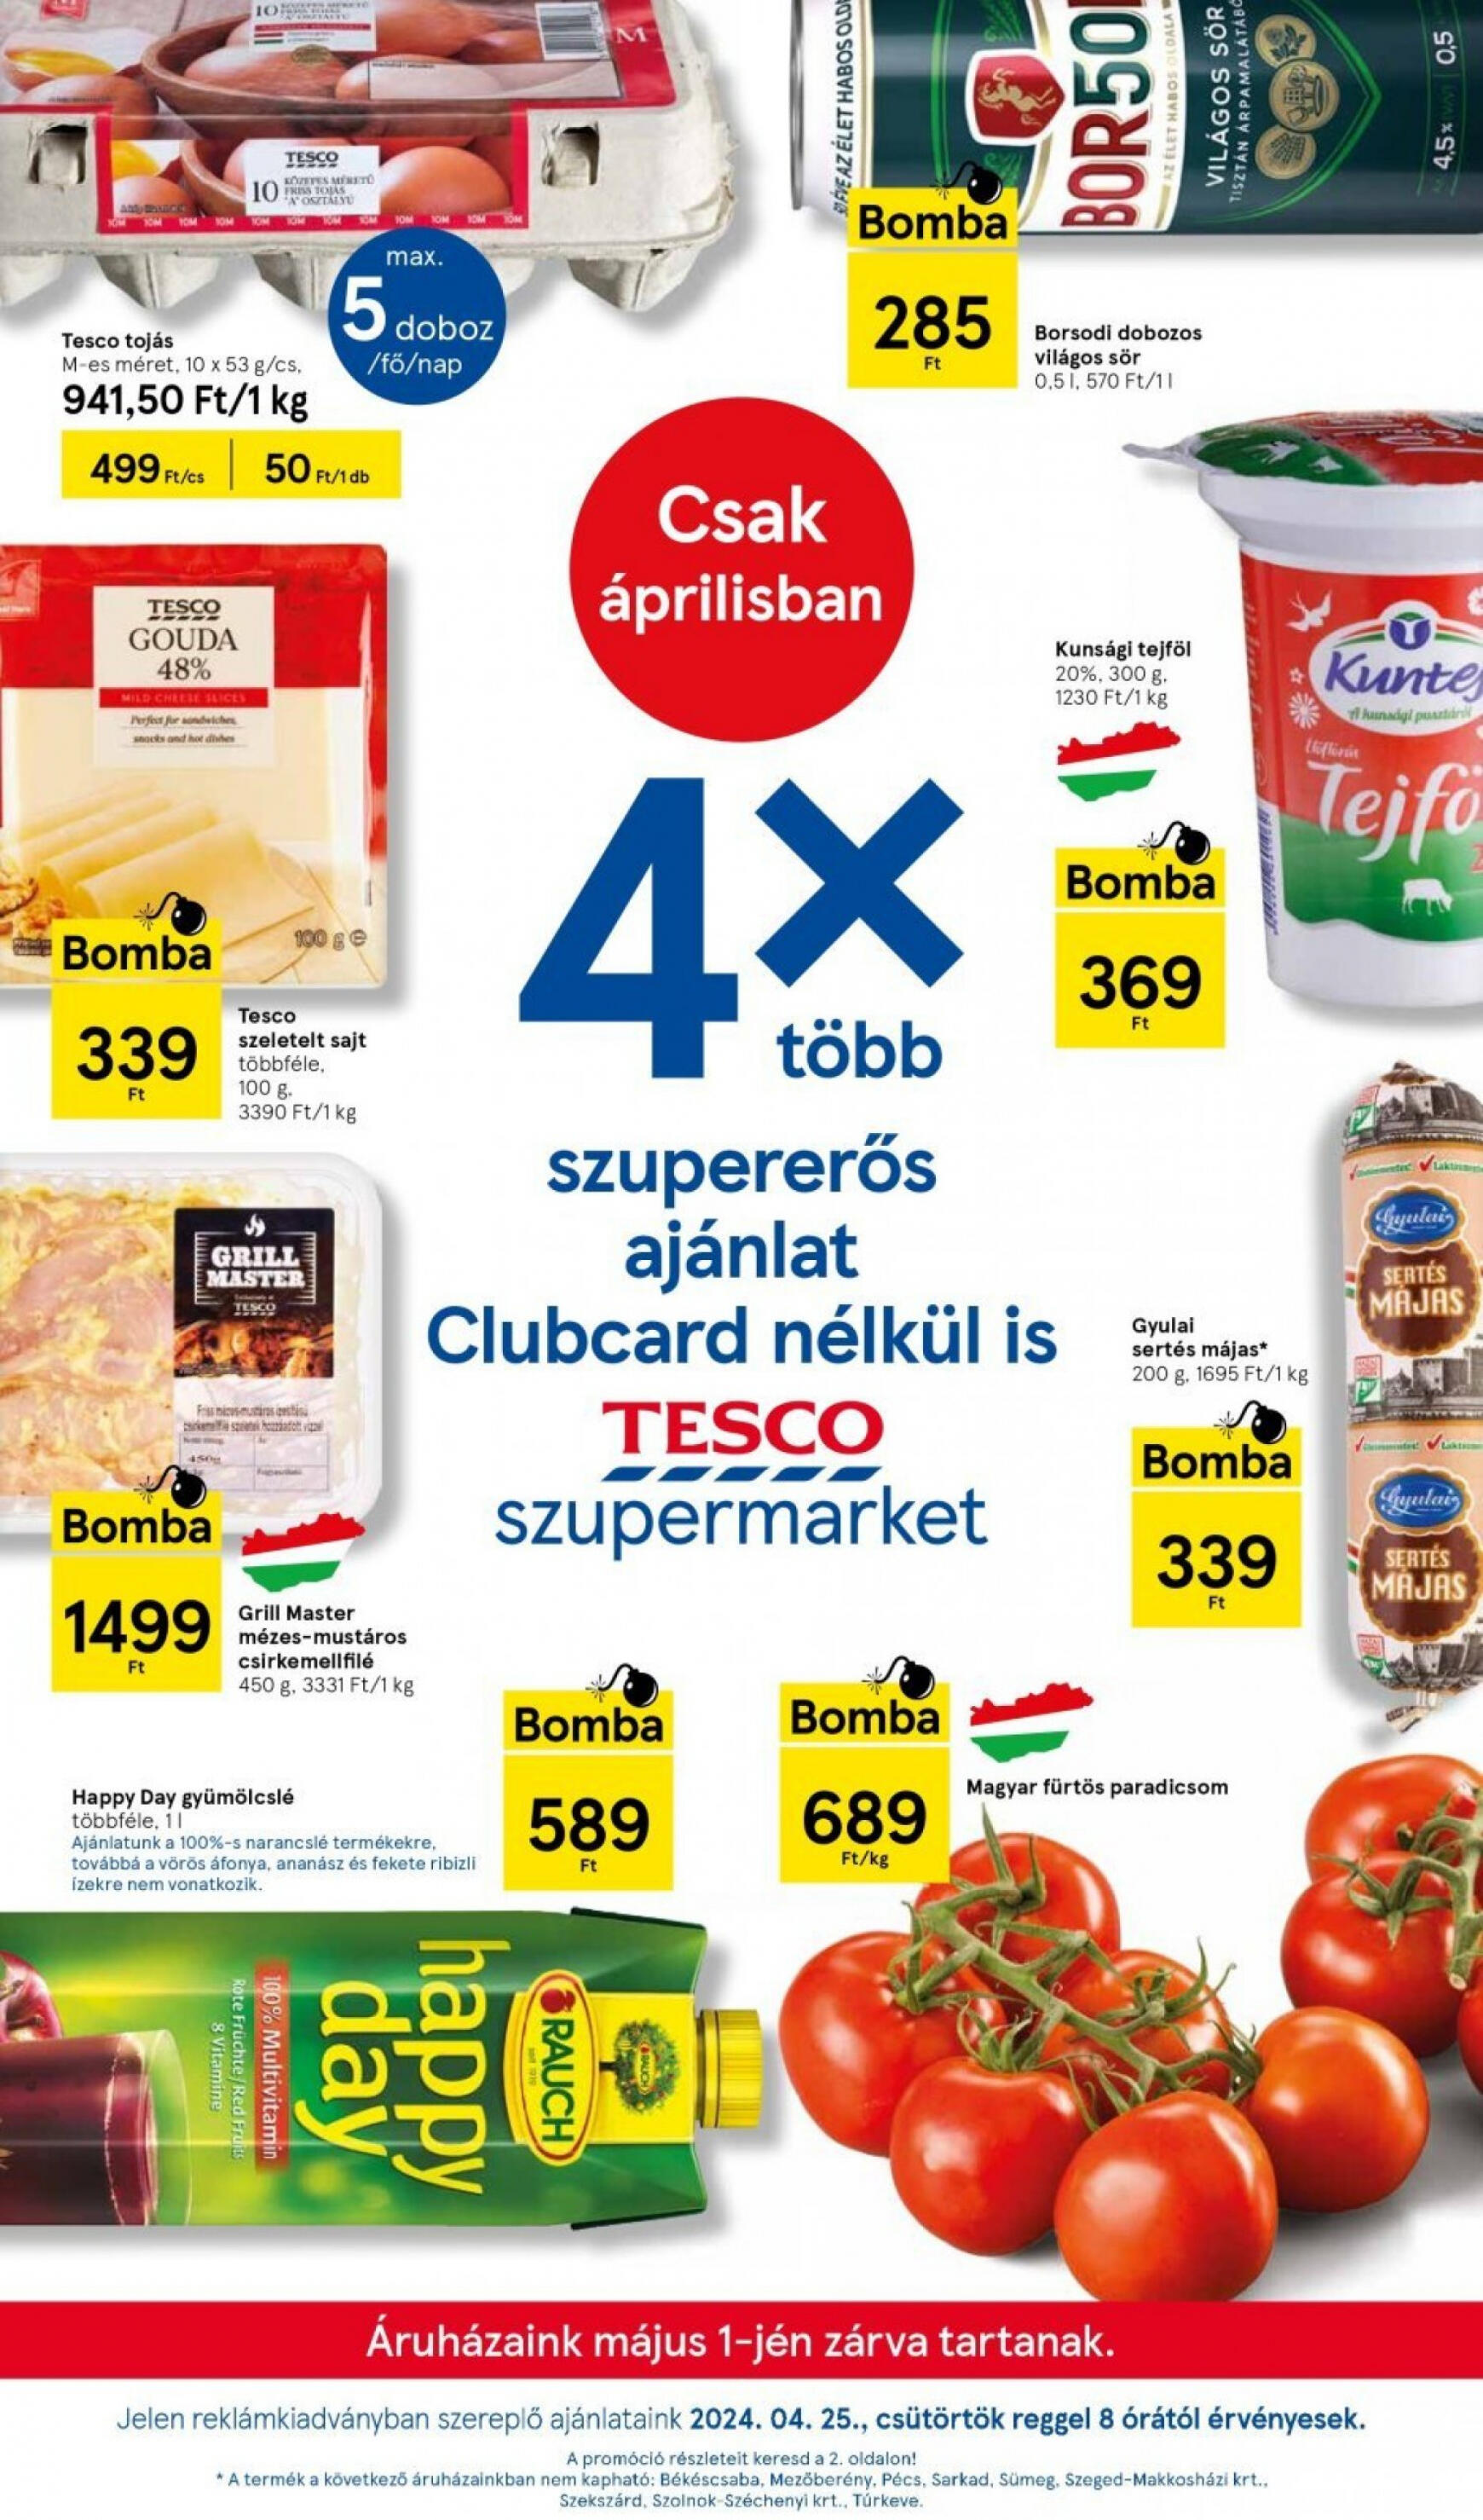 tesco - Aktuális újság Tesco szupermarket 04.25. - 05.01. - page: 1